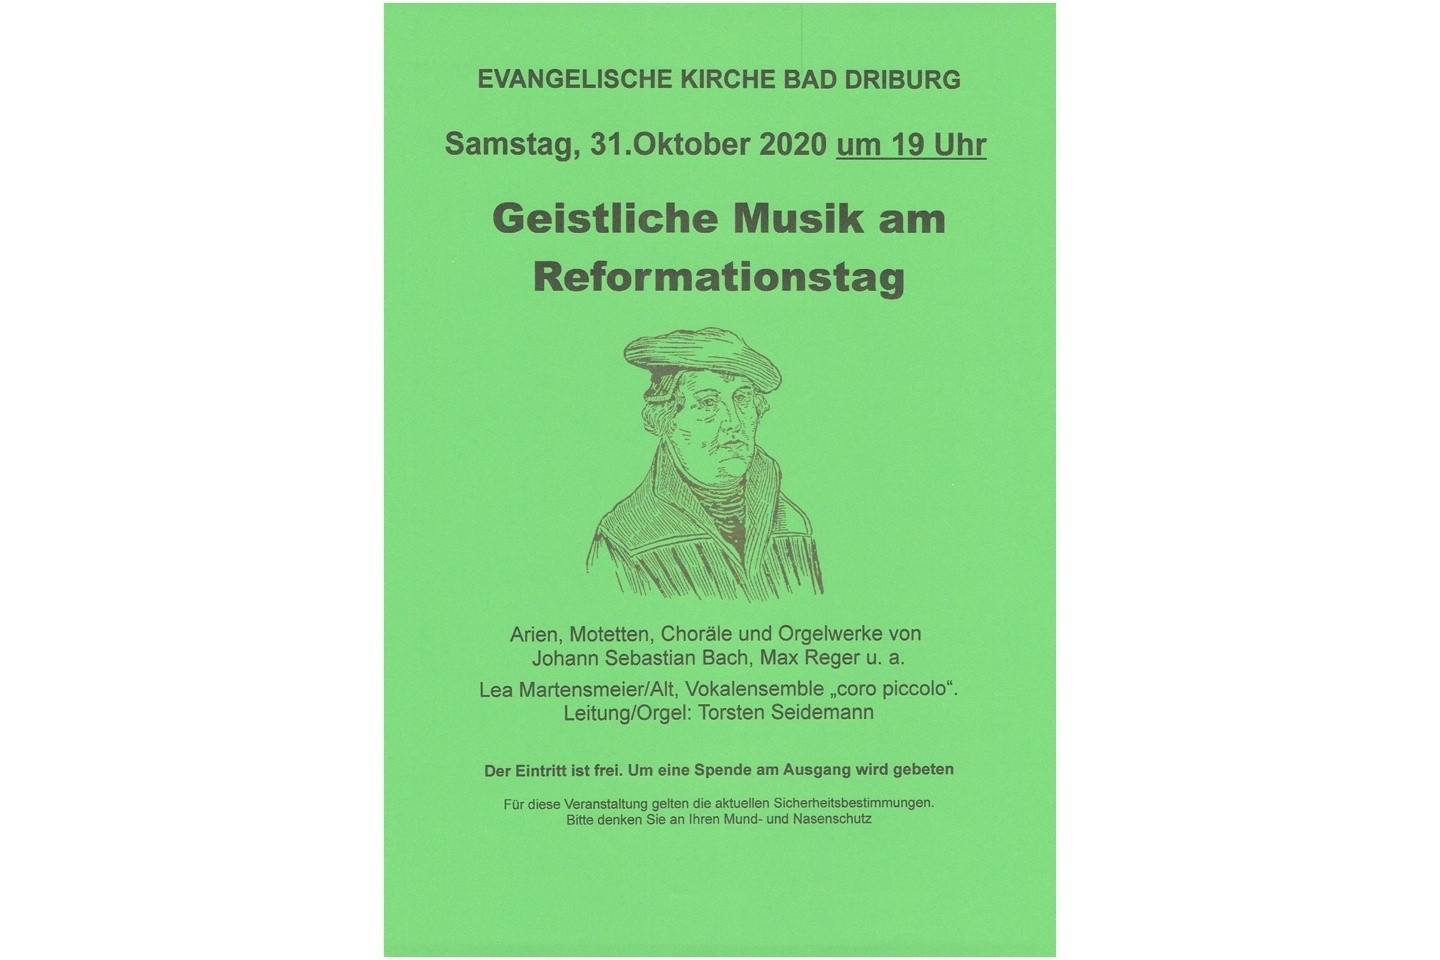 EVANGELISCHE KIRCHE BAD DRIBURG - Geistliche Musik am Reformationstag Plakat Termin Zeichnung Reformator Martin Luther